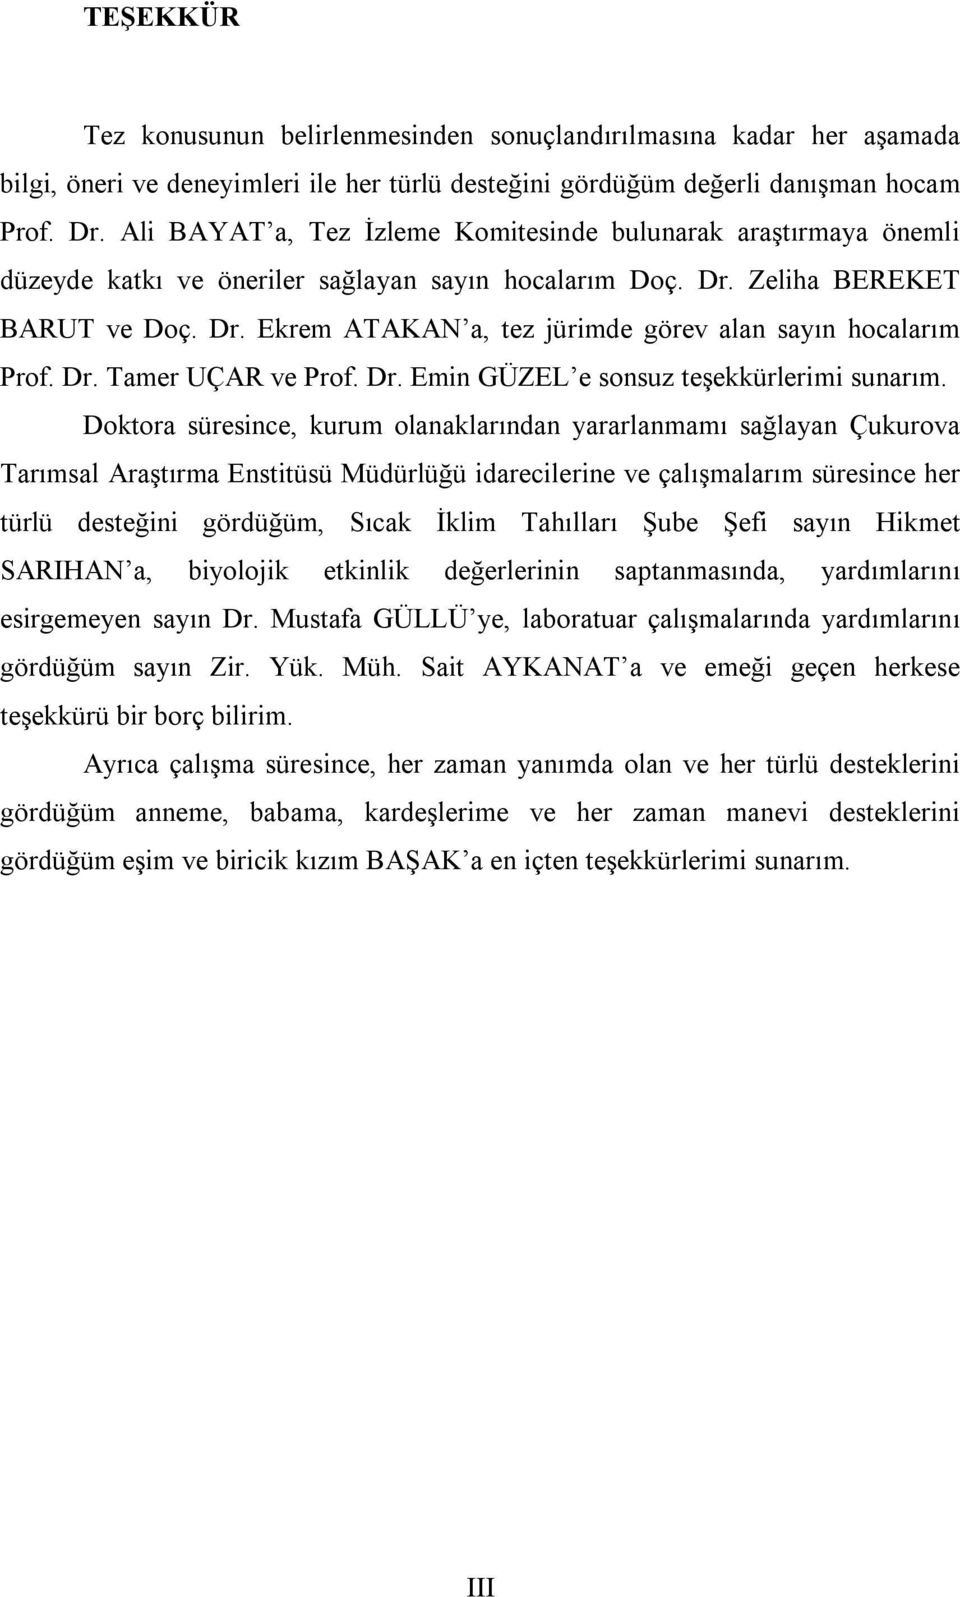 Dr. Tamer UÇAR ve Prof. Dr. Emin GÜZEL e sonsuz teşekkürlerimi sunarım.